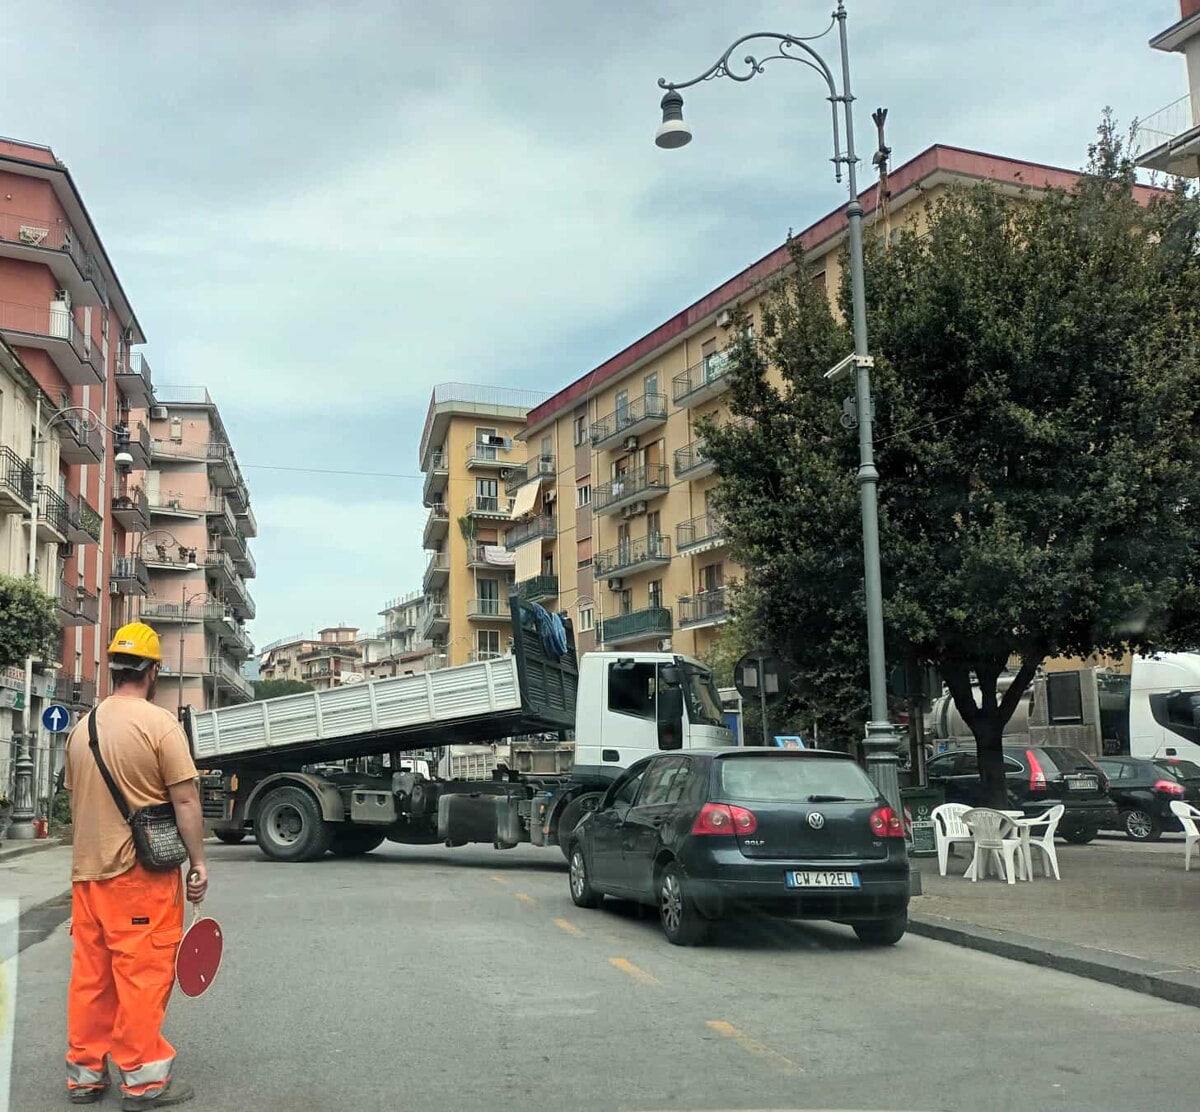 Lavori Enel in via Trento, Pessolano: “Congestionano il traffico della zona”